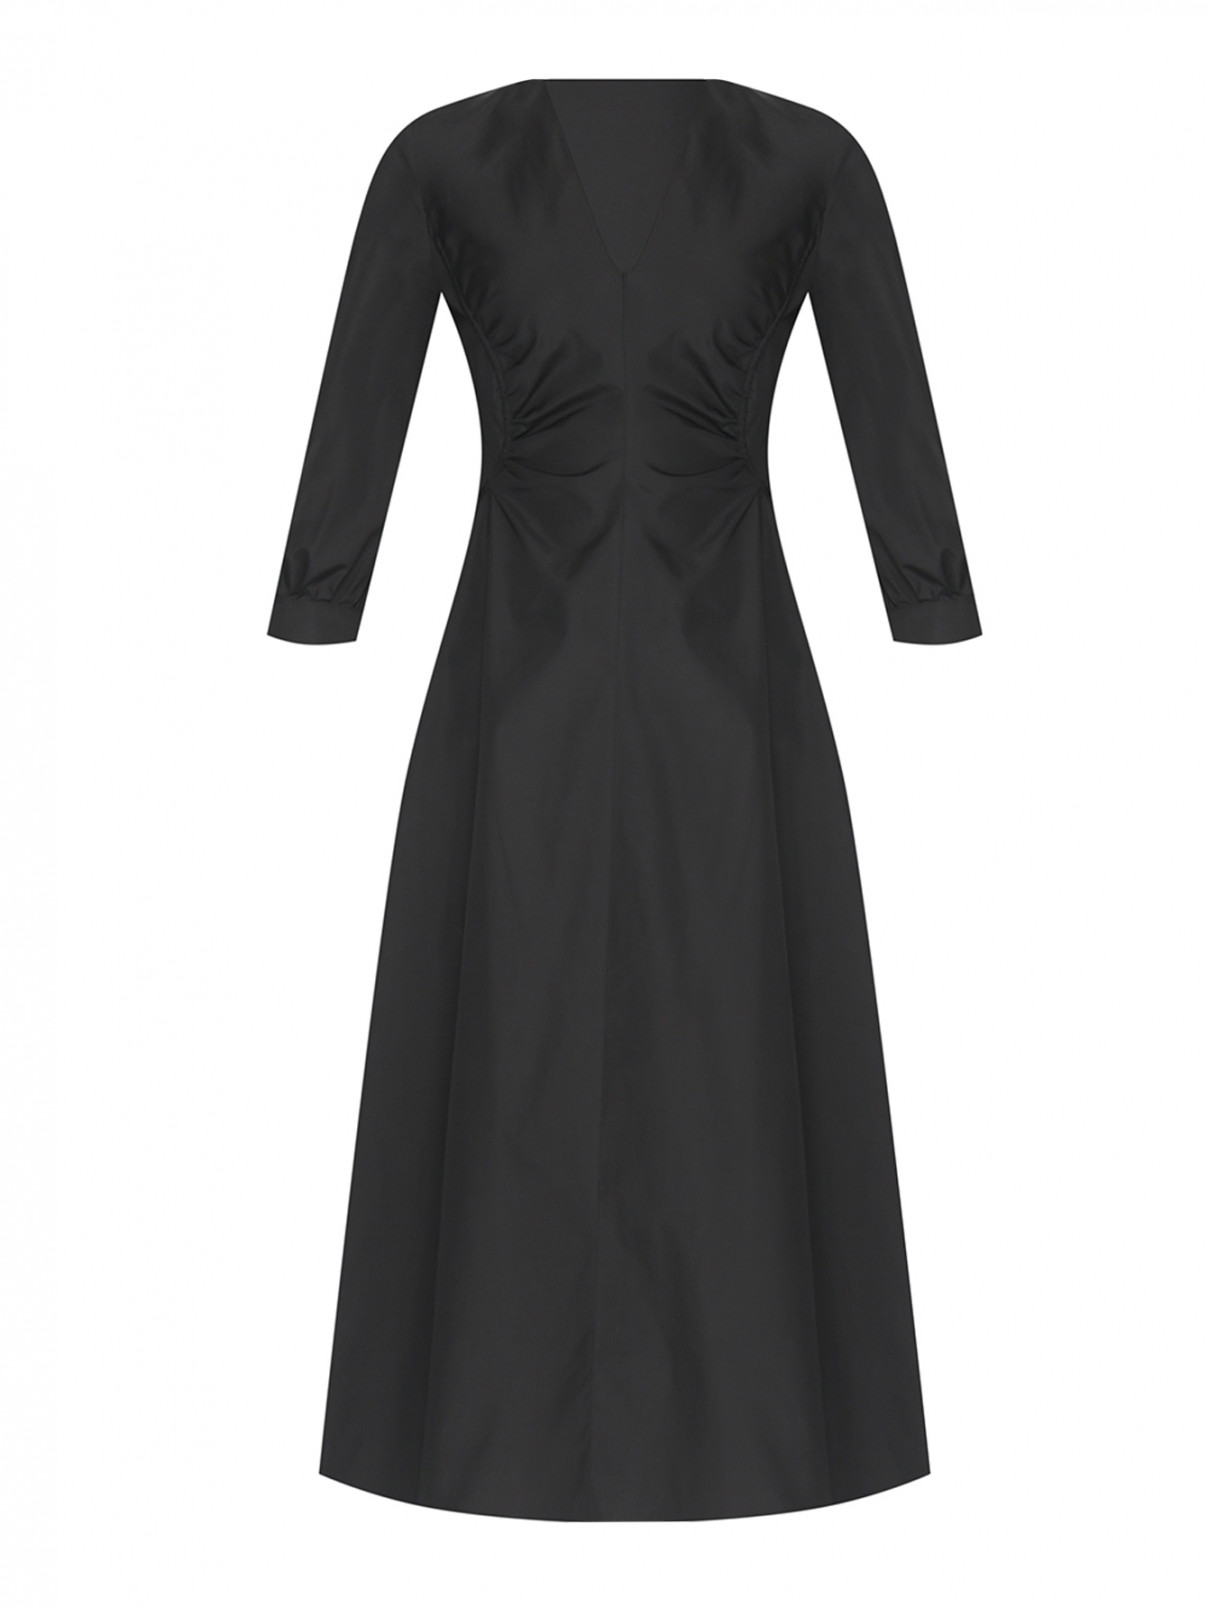 Хлопковое платье с рельефами Max Mara  –  Общий вид  – Цвет:  Черный